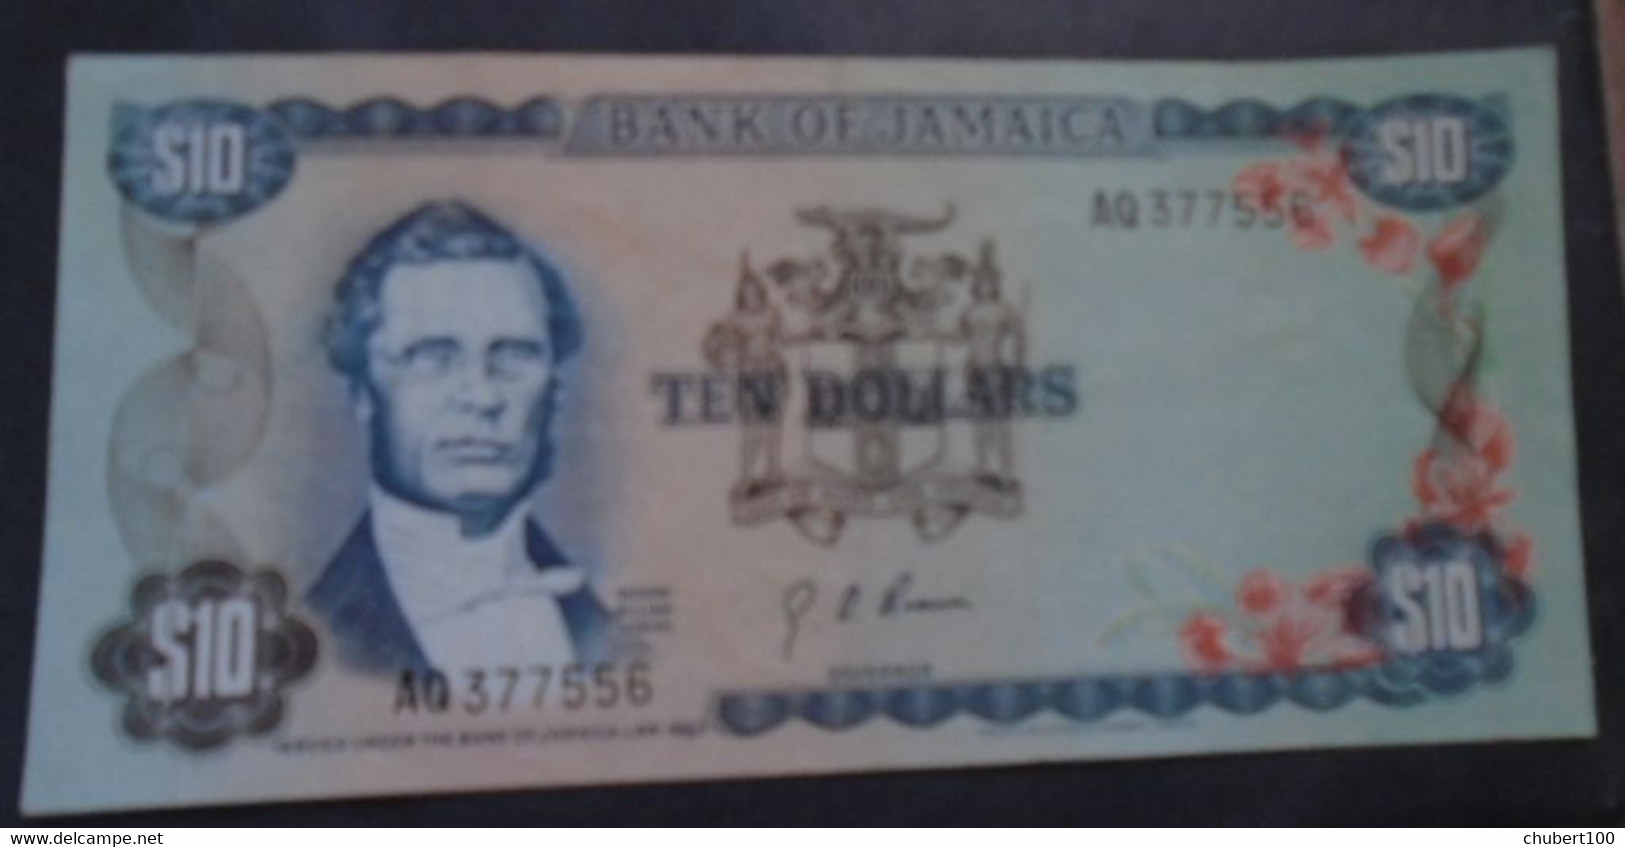 JAMAICA , P 62 , 10 Dollars , L 1960 (1976),  EF/ Almost UNC - Jamaica